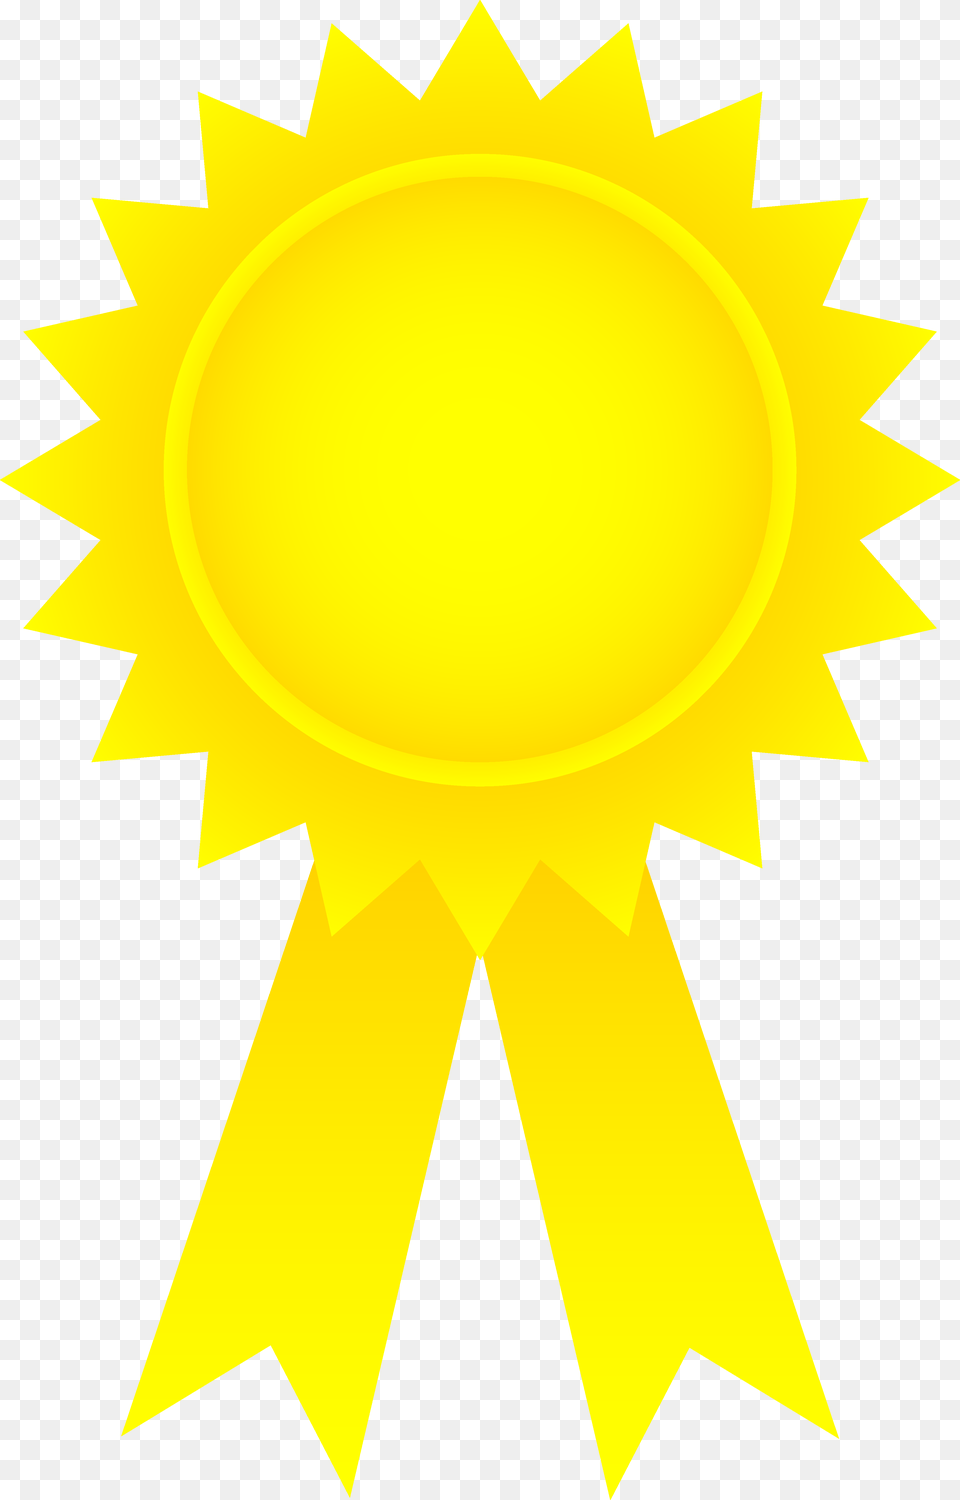 Golden Award Ribbon, Nature, Outdoors, Sun, Sky Free Png